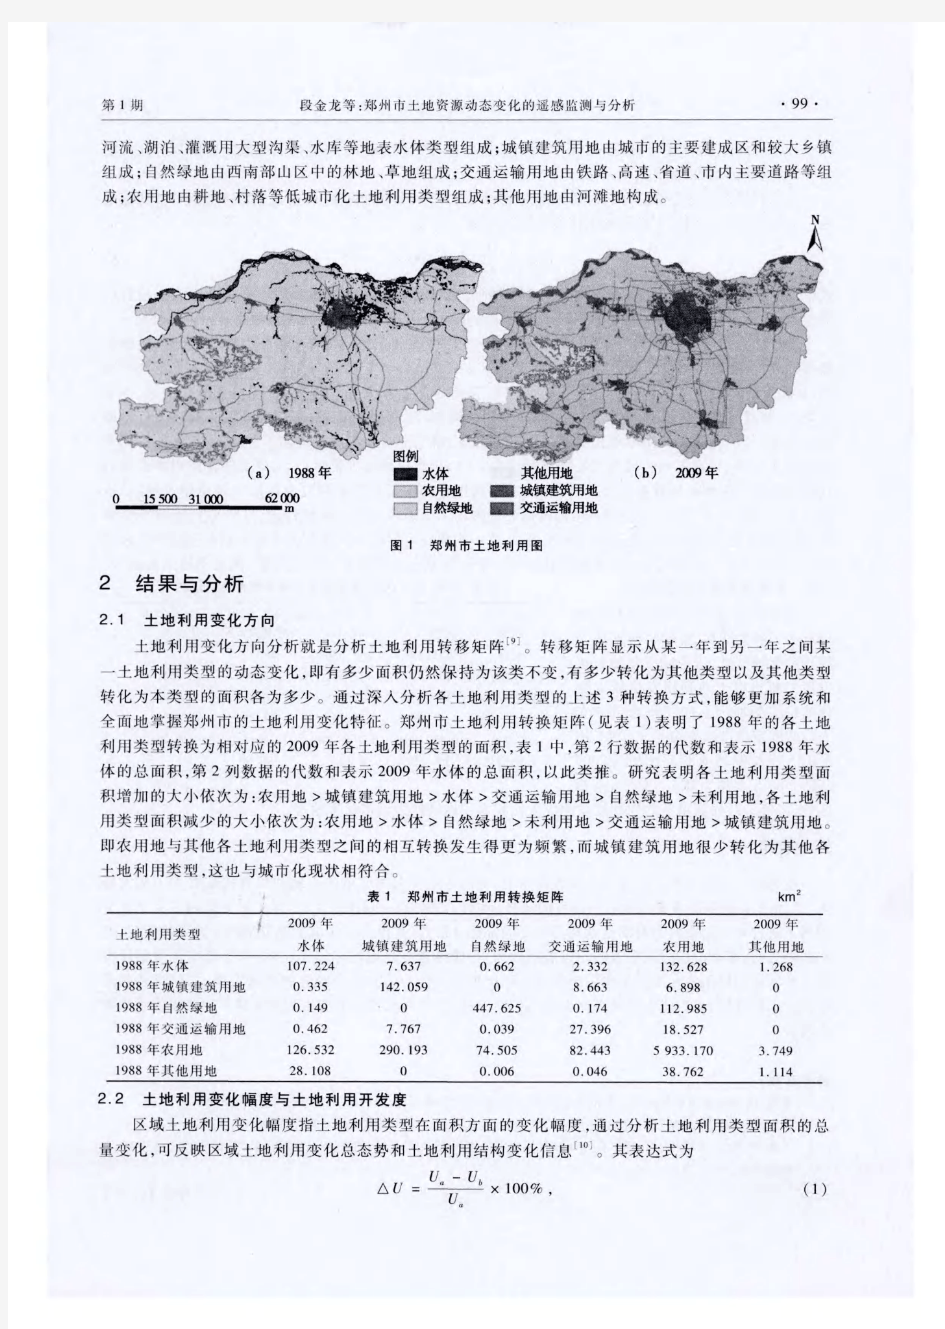 郑州市土地资源动态变化的遥感监测与分析